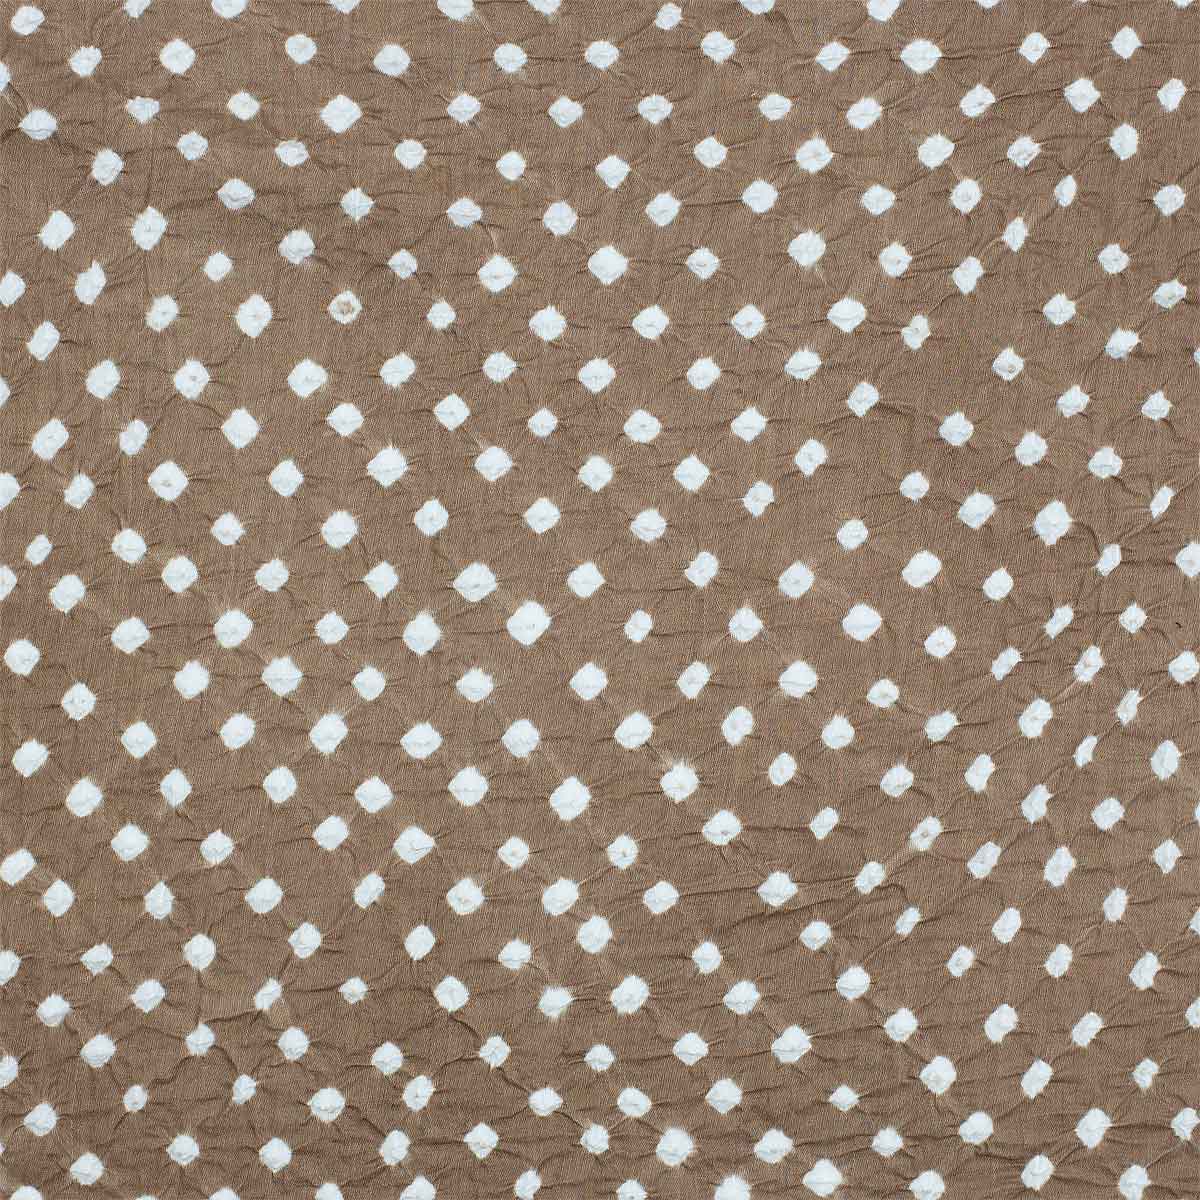 KNOT BATIK Fabric, brown/white